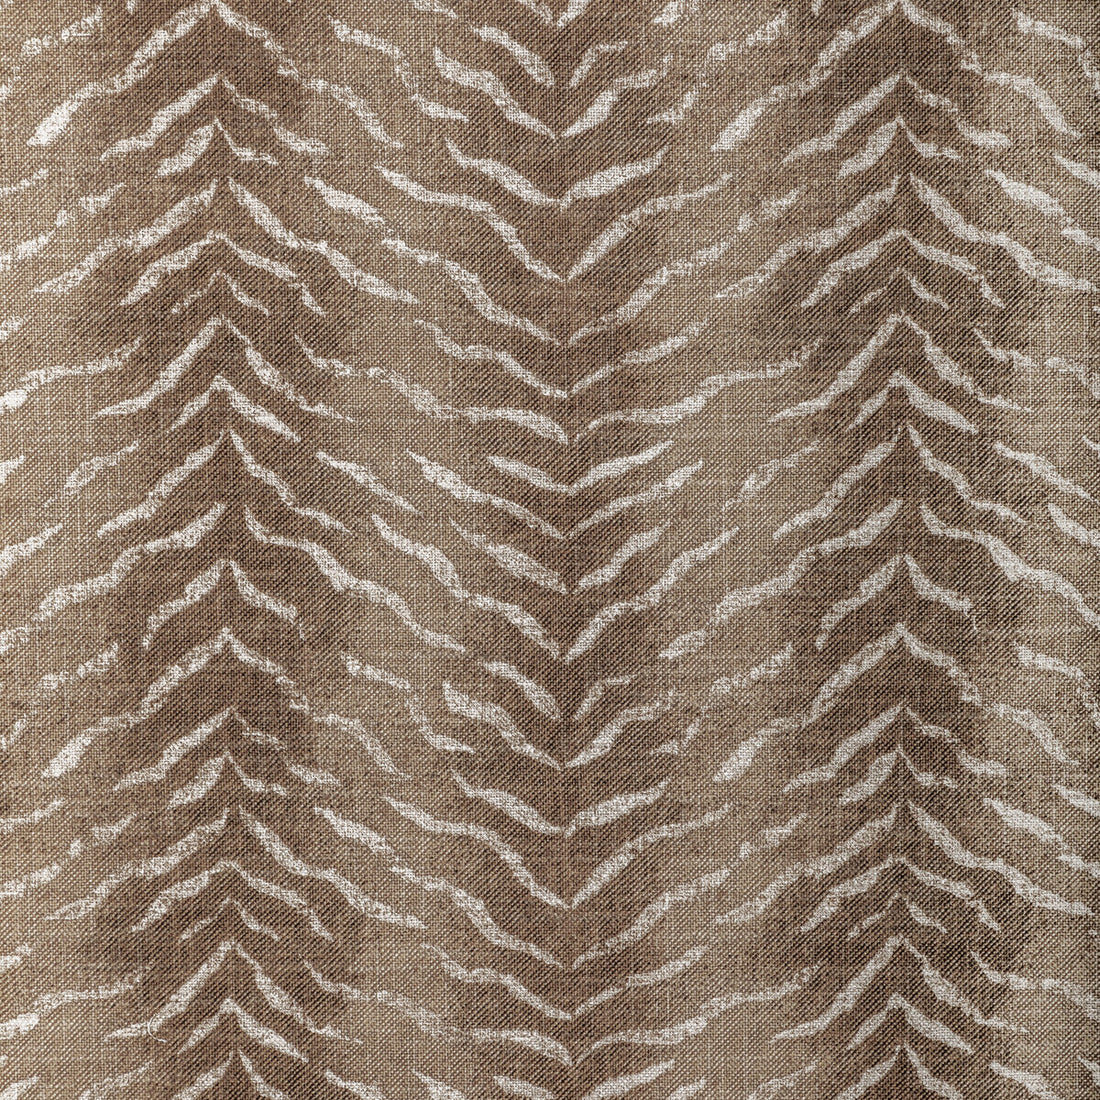 Kravet Basics fabric in kuda-1161 color - pattern KUDA.1161.0 - by Kravet Basics